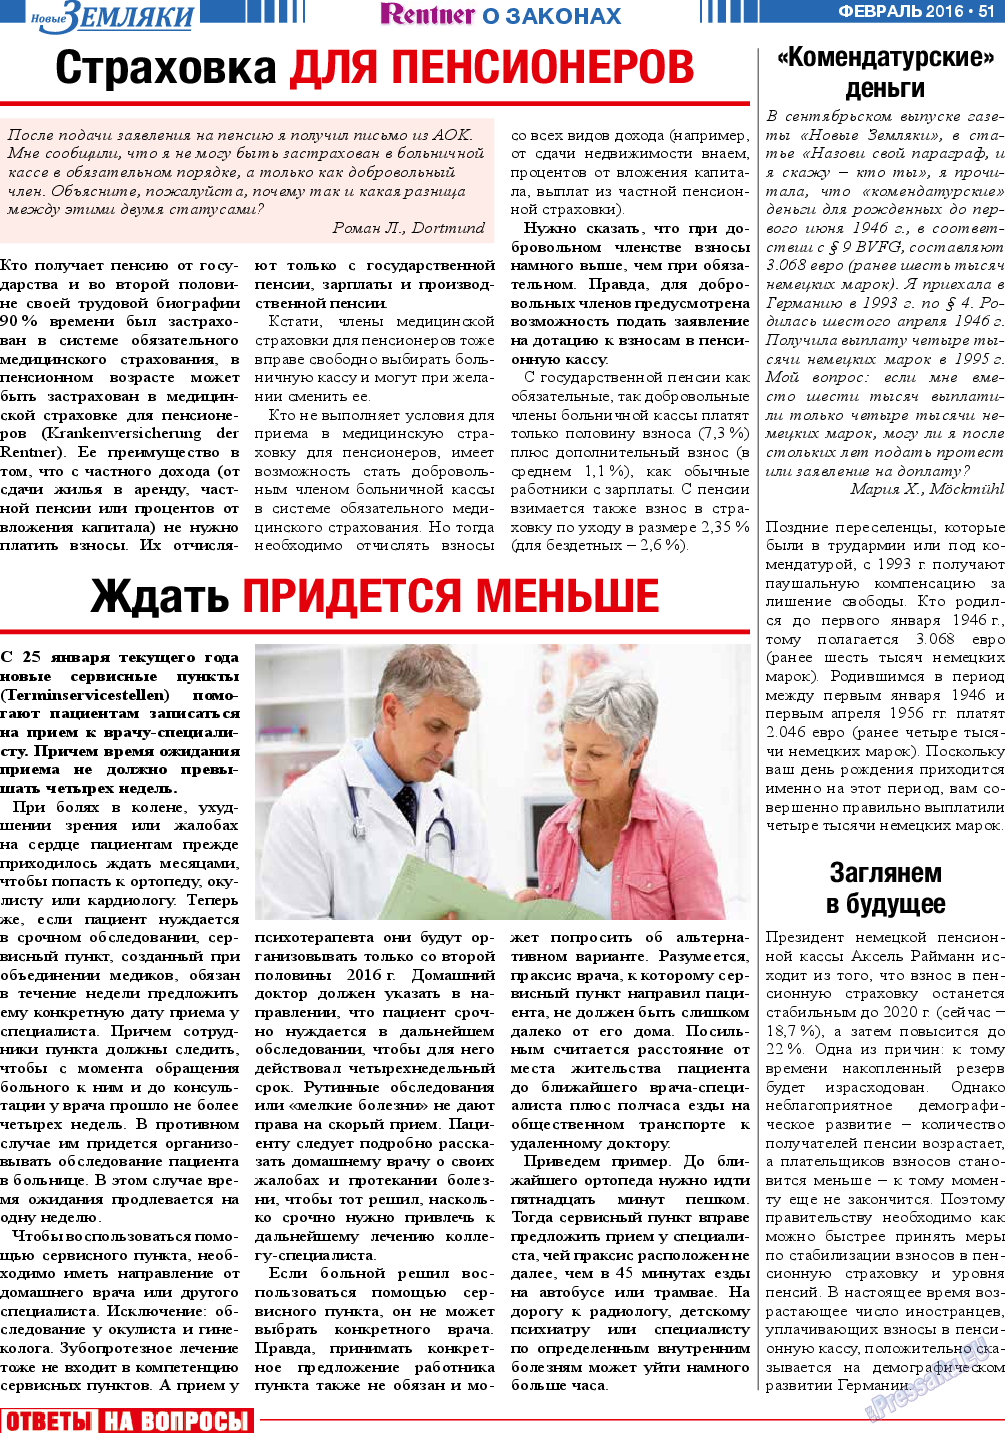 Новые Земляки, газета. 2016 №2 стр.51